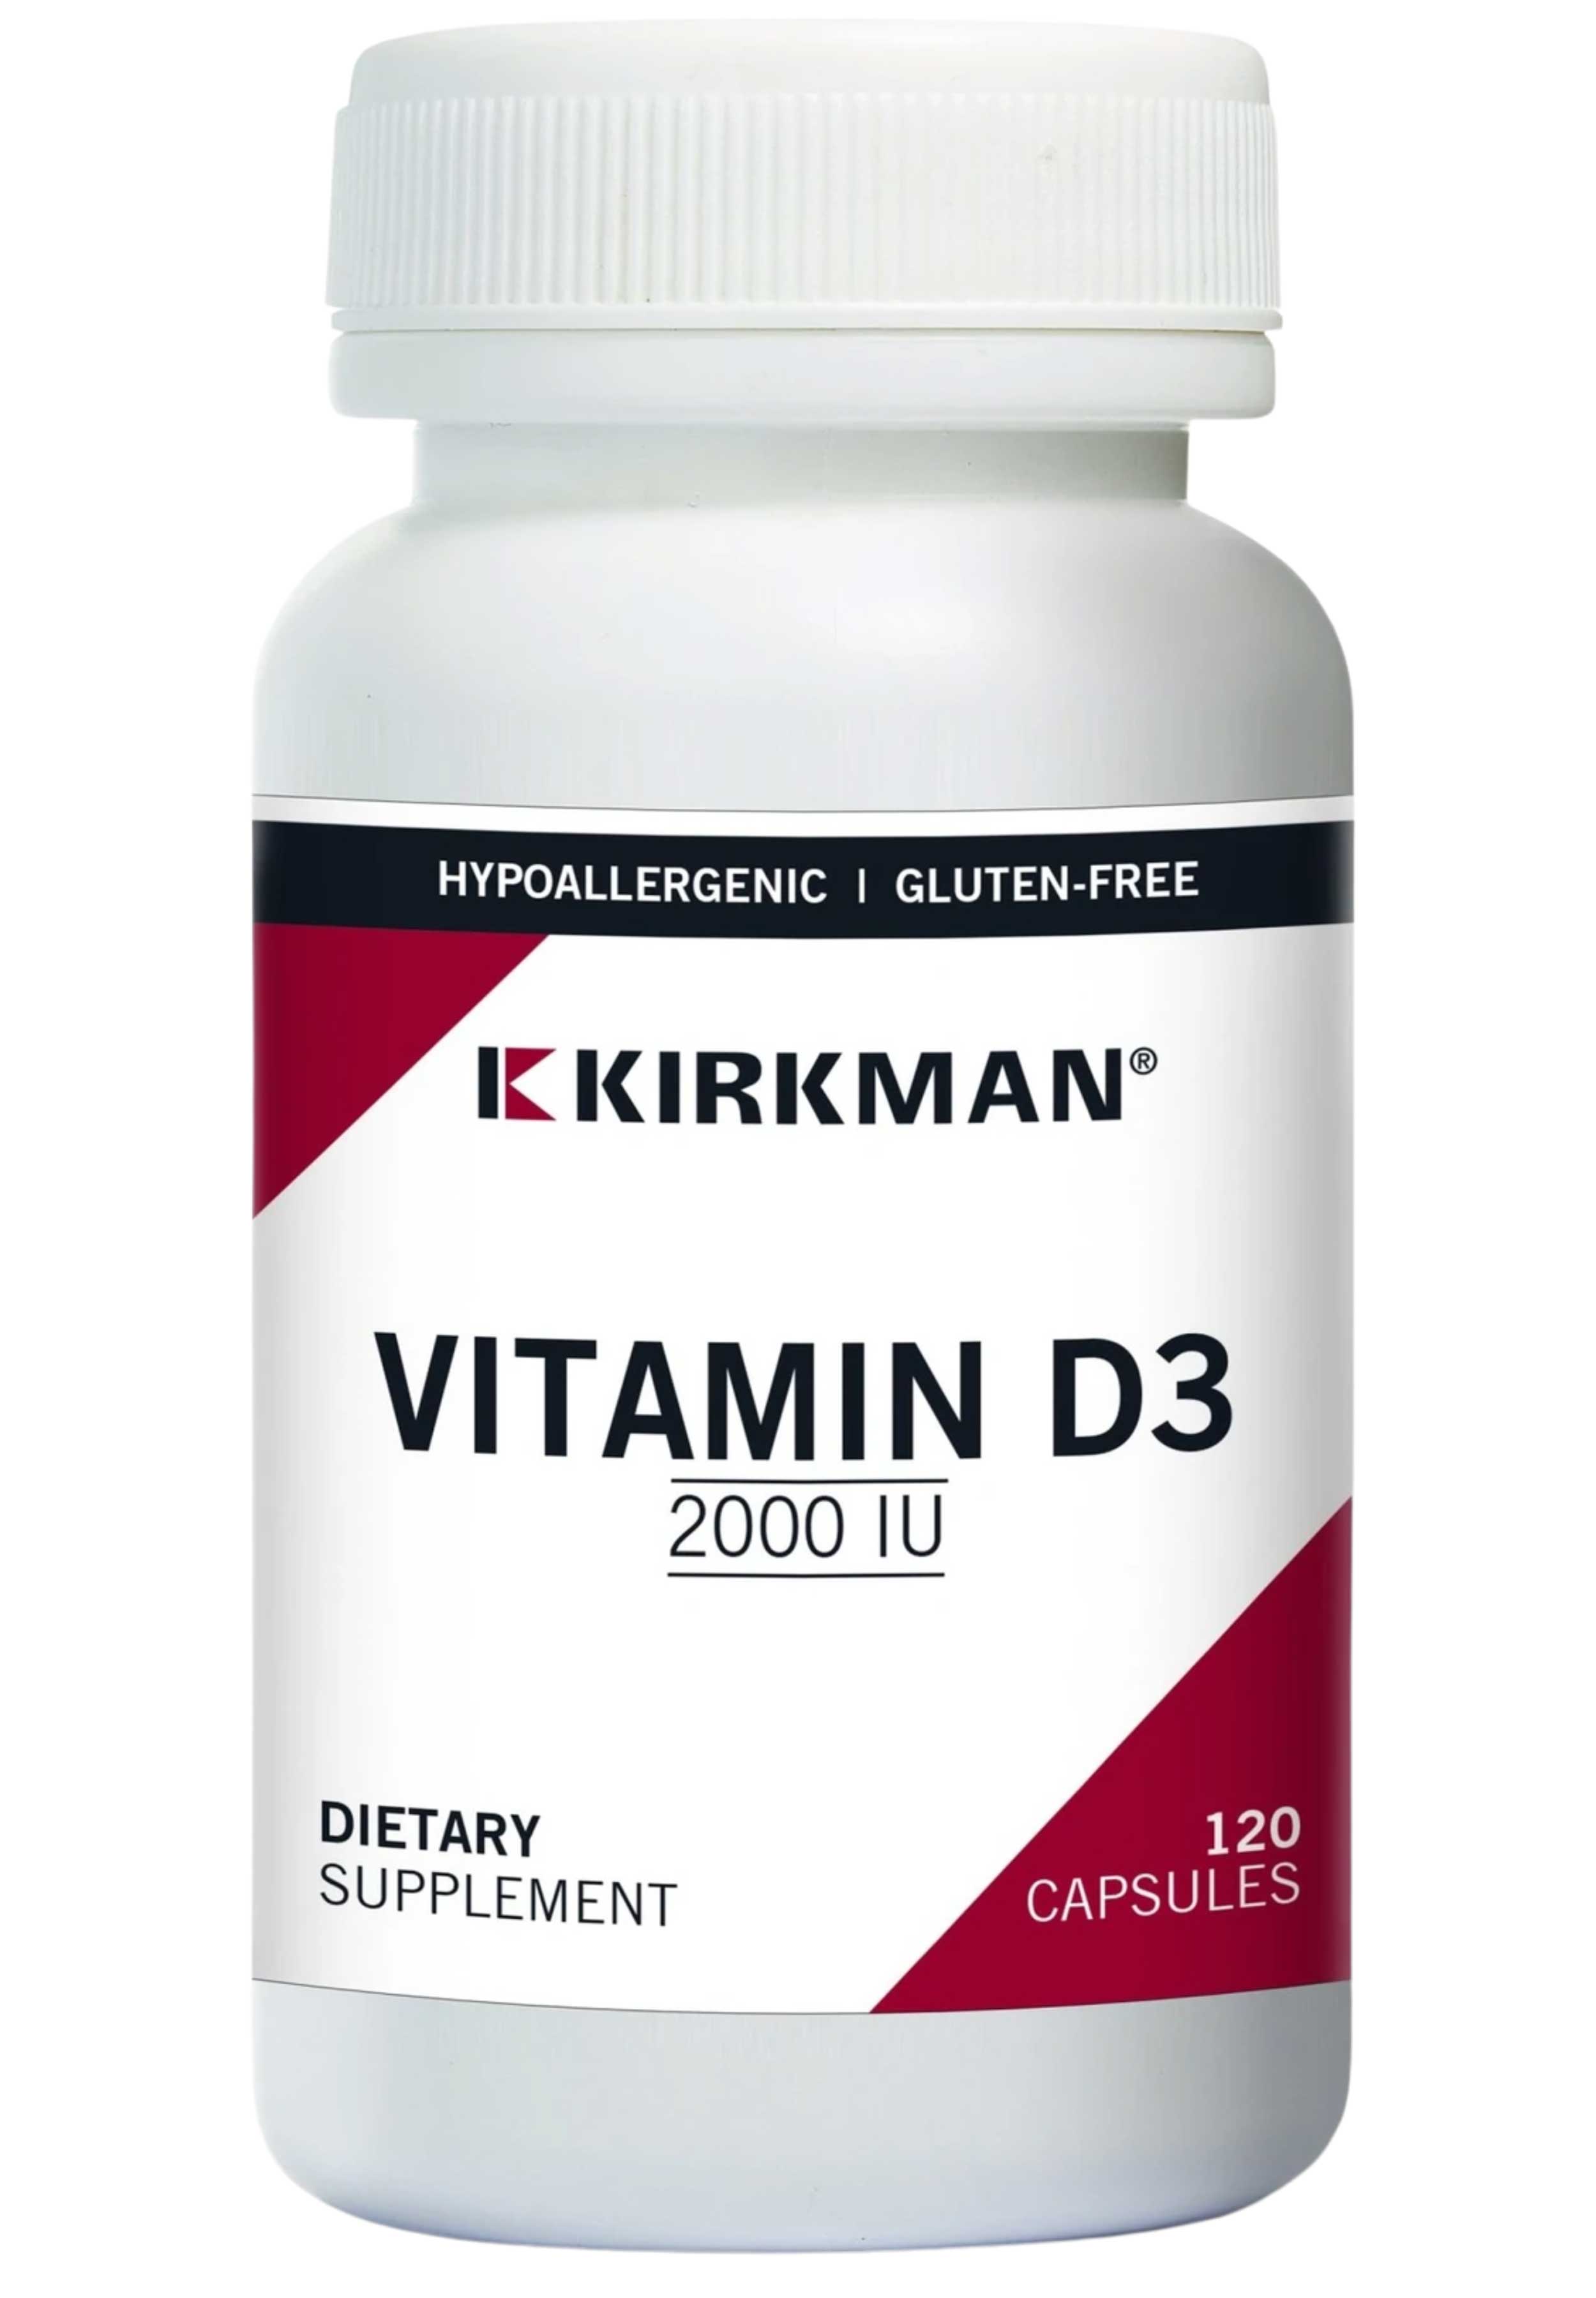 Kirkman Vitamin D3 2000 IU